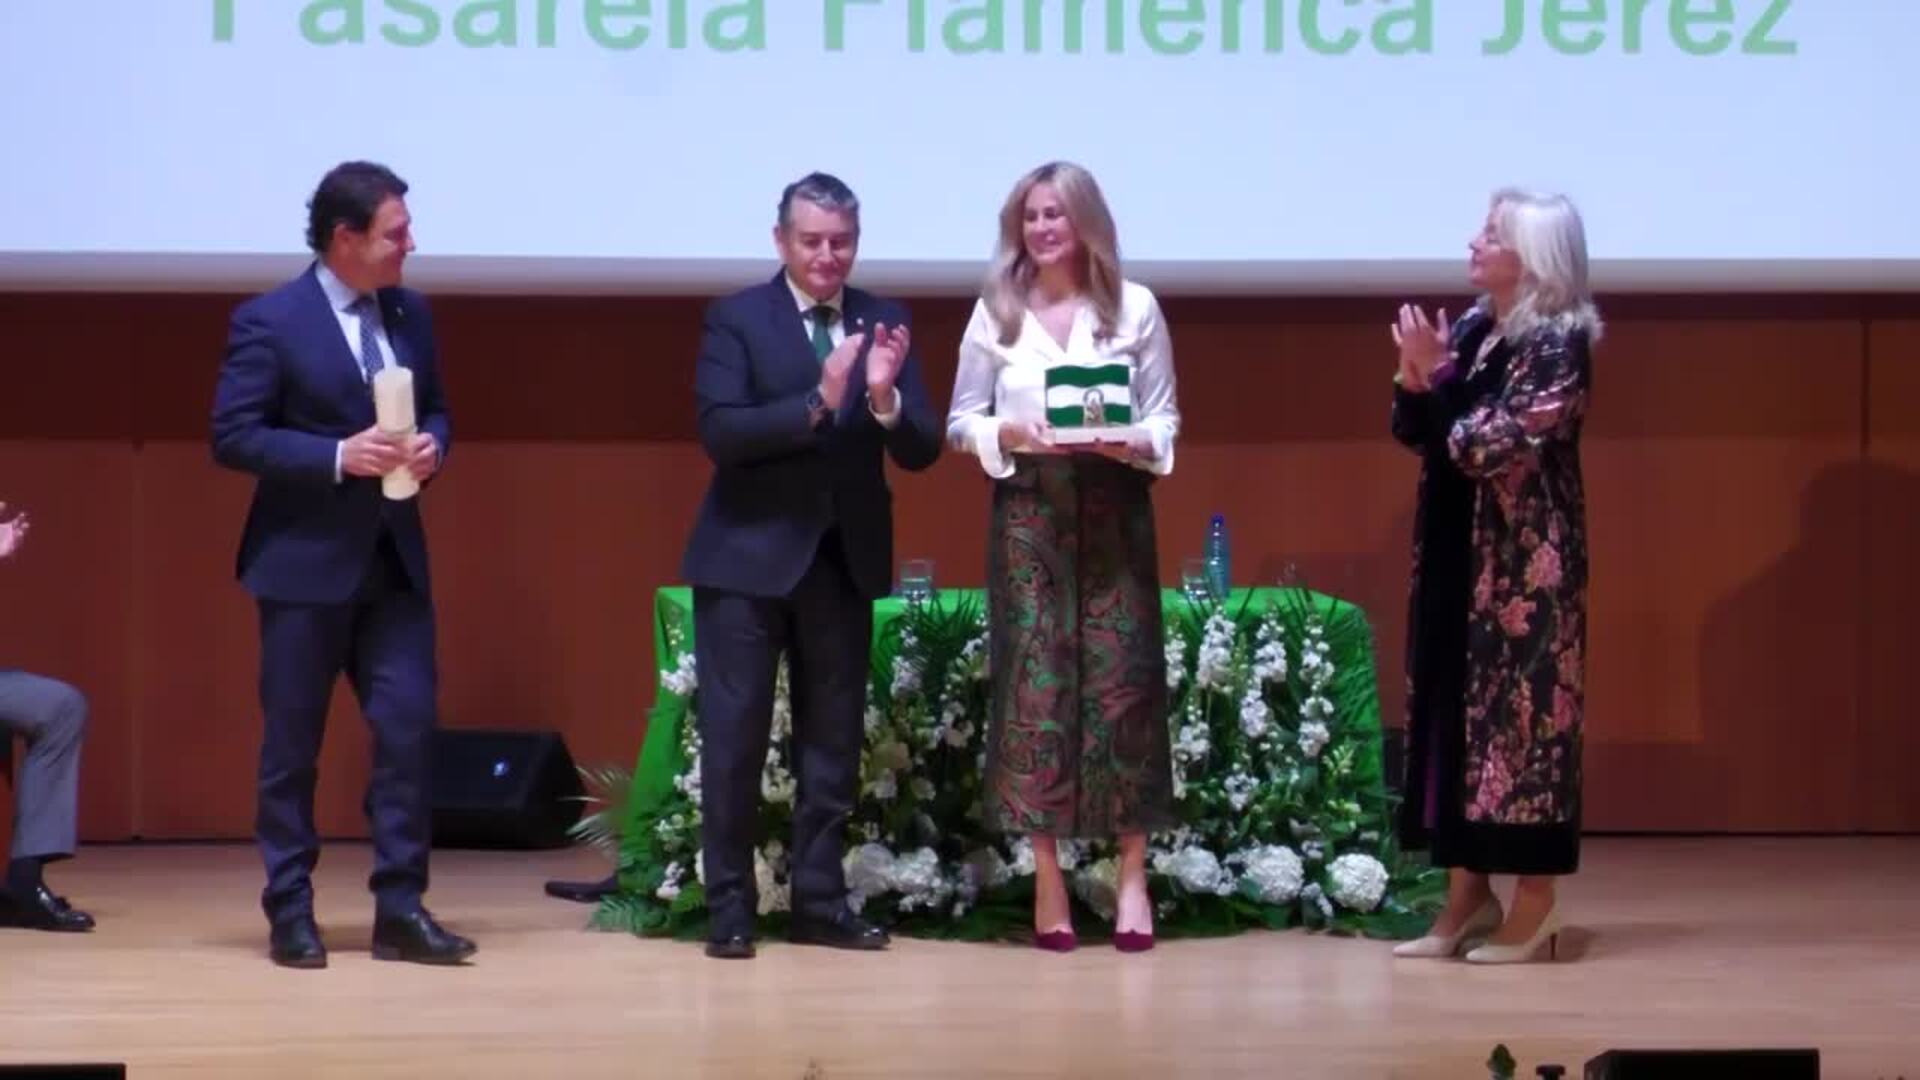 La Junta premia el "buen hacer" con la entrega de Banderas de Andalucía en Cádiz